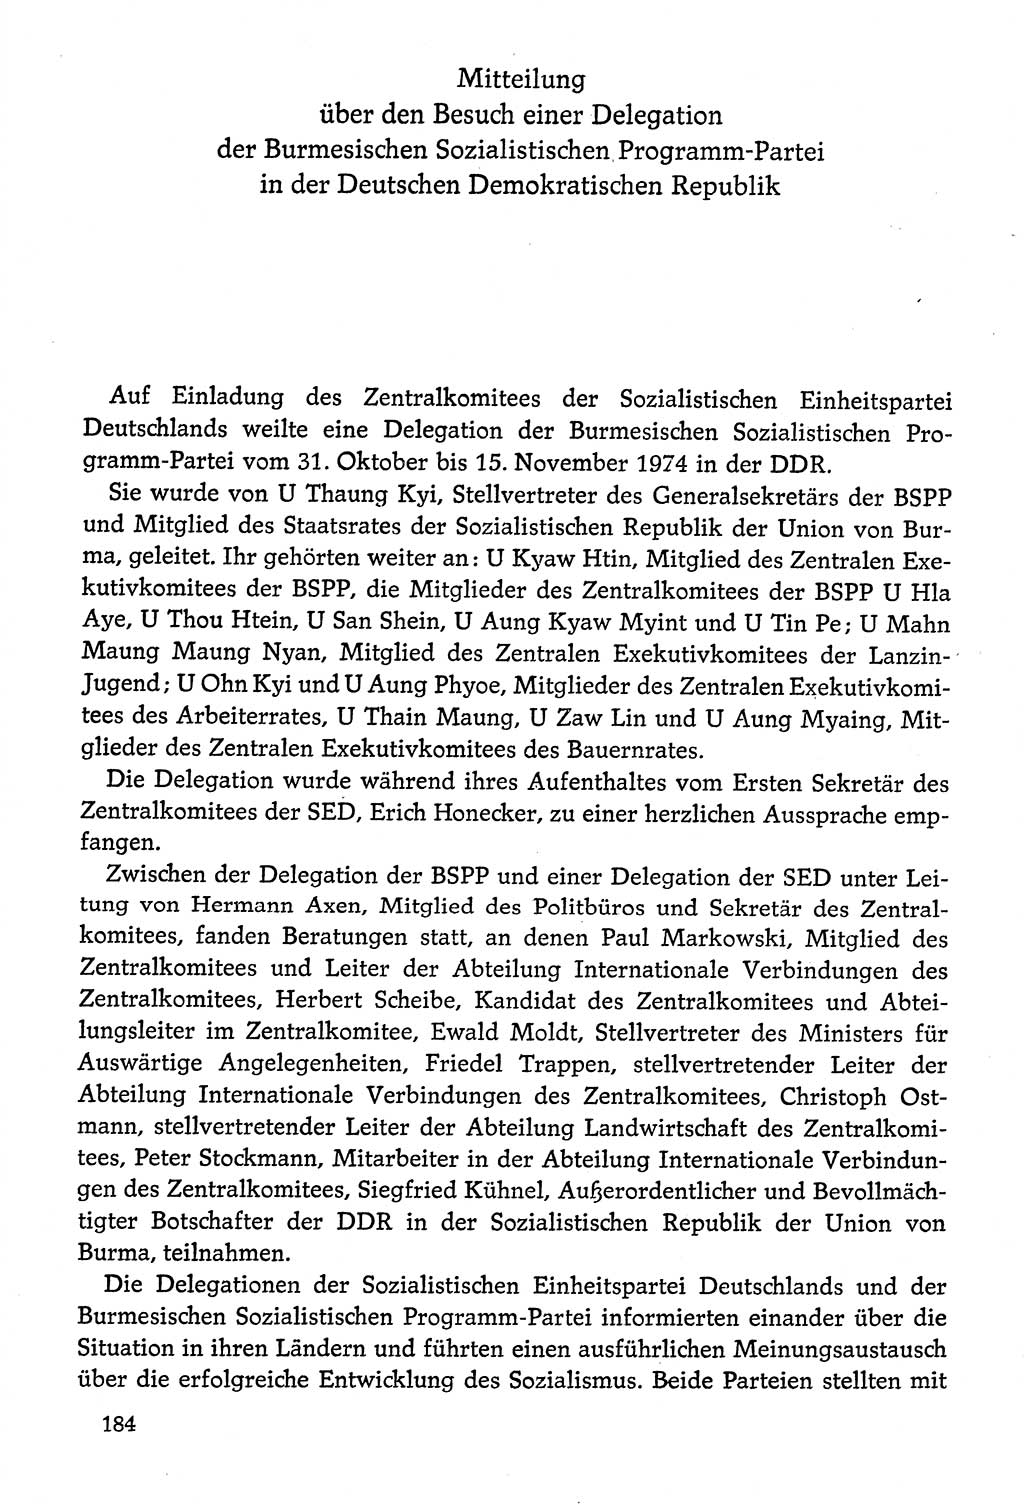 Dokumente der Sozialistischen Einheitspartei Deutschlands (SED) [Deutsche Demokratische Republik (DDR)] 1974-1975, Seite 184 (Dok. SED DDR 1978, Bd. ⅩⅤ, S. 184)